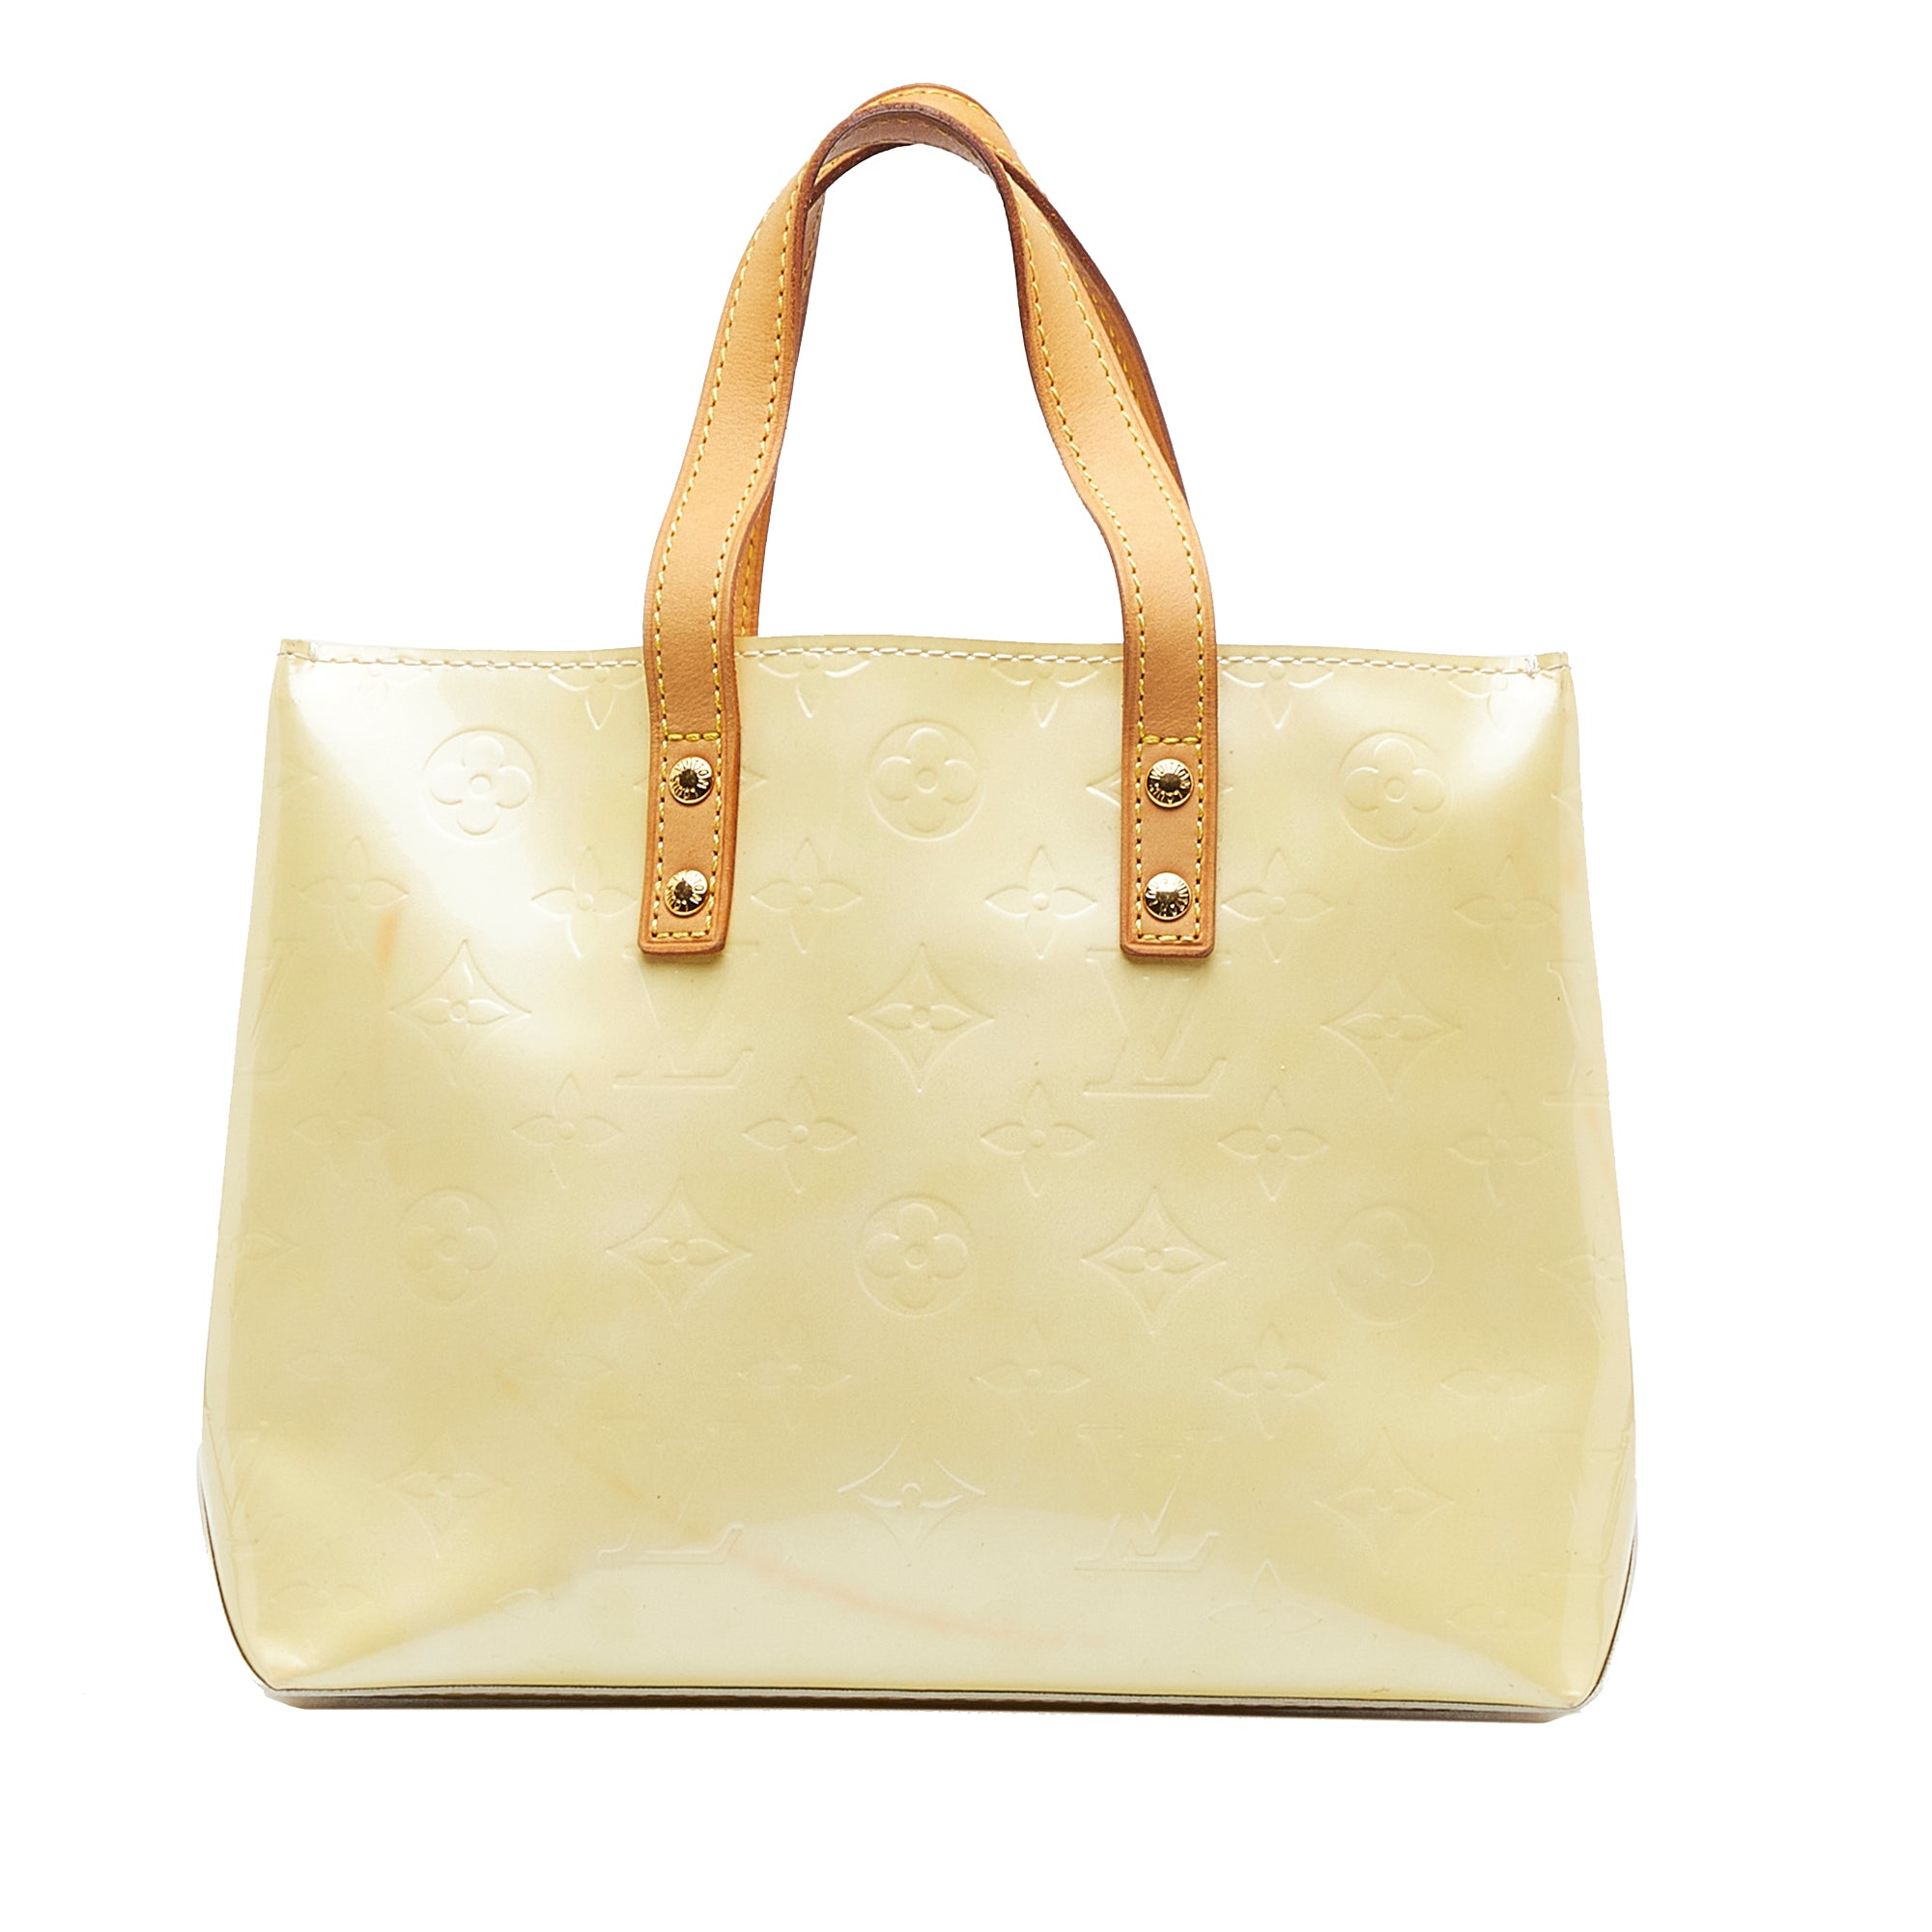 Louis Vuitton Vernis Leather Zip Top Handbag in Metallic